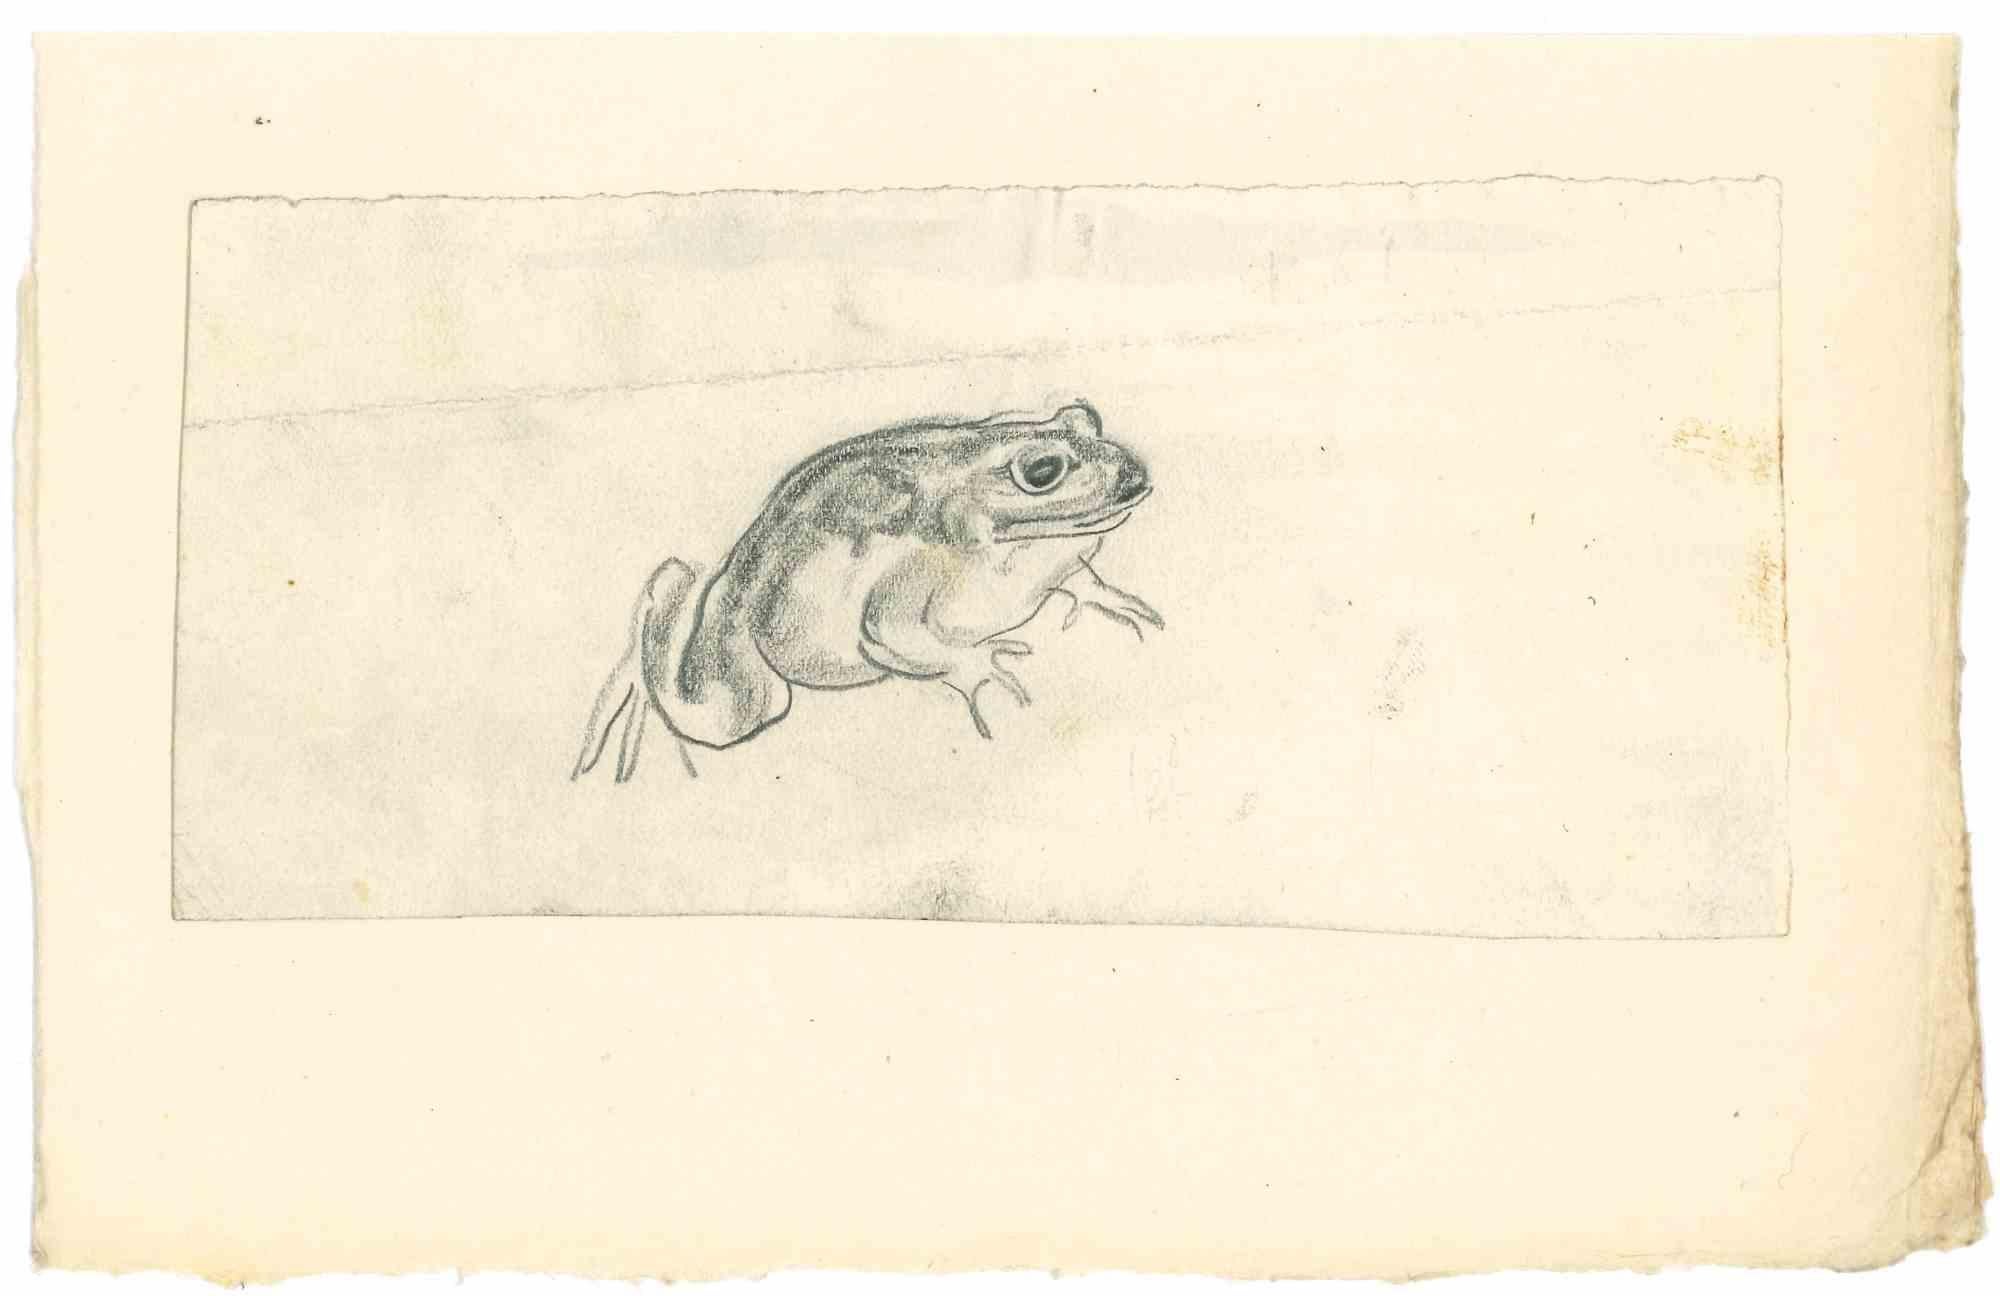 La grenouille est un  dessin au crayon réalisé au début des années 1930 par Emmanuel Gondouin, (Versailles, 1883 - Parigi, 1934) 
 
L'œuvre d'art est représentée par des traits puissants.
 
Emmanuel Gondouin est un peintre cubiste français né à